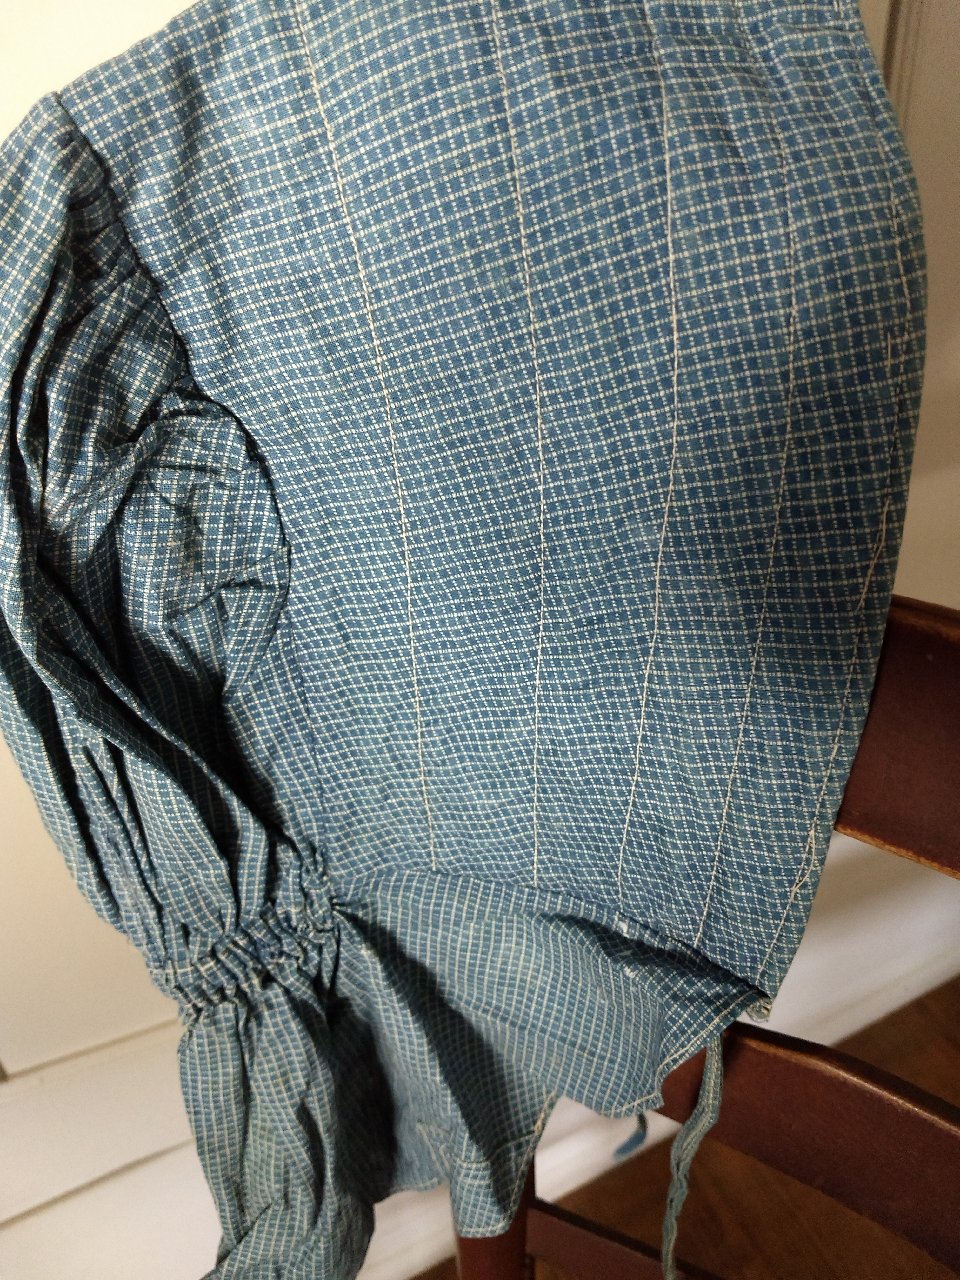 Antique Check Sunbonnet Cadet Blue Fabric Homespun Lining Chin Ties ...